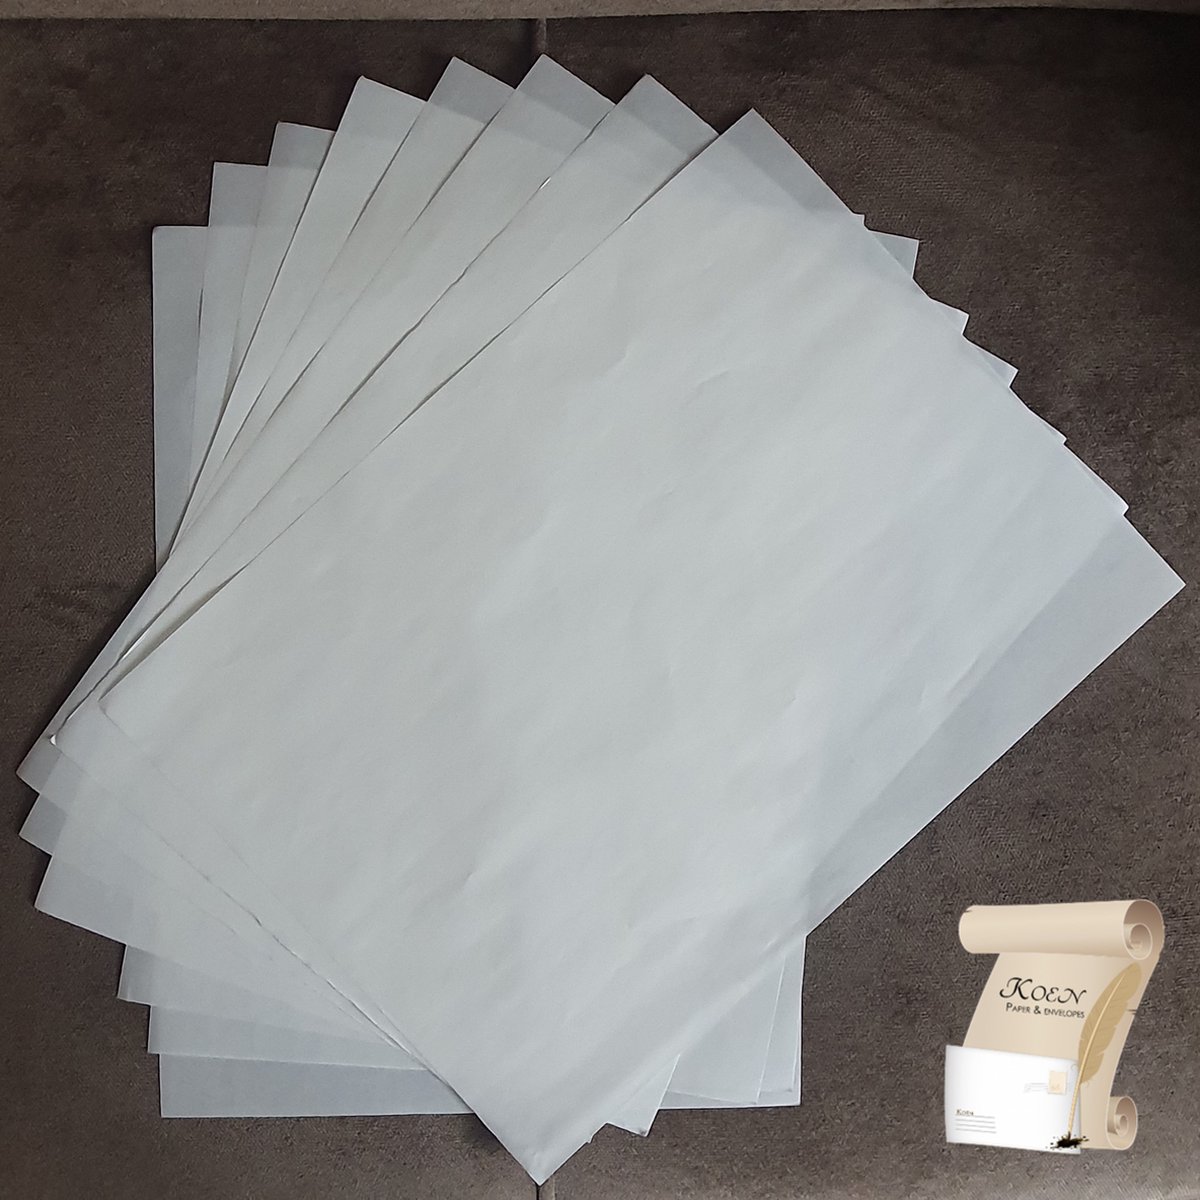 Vetvrij papier zonder opdruk - 50 vellen - 100x100 cm